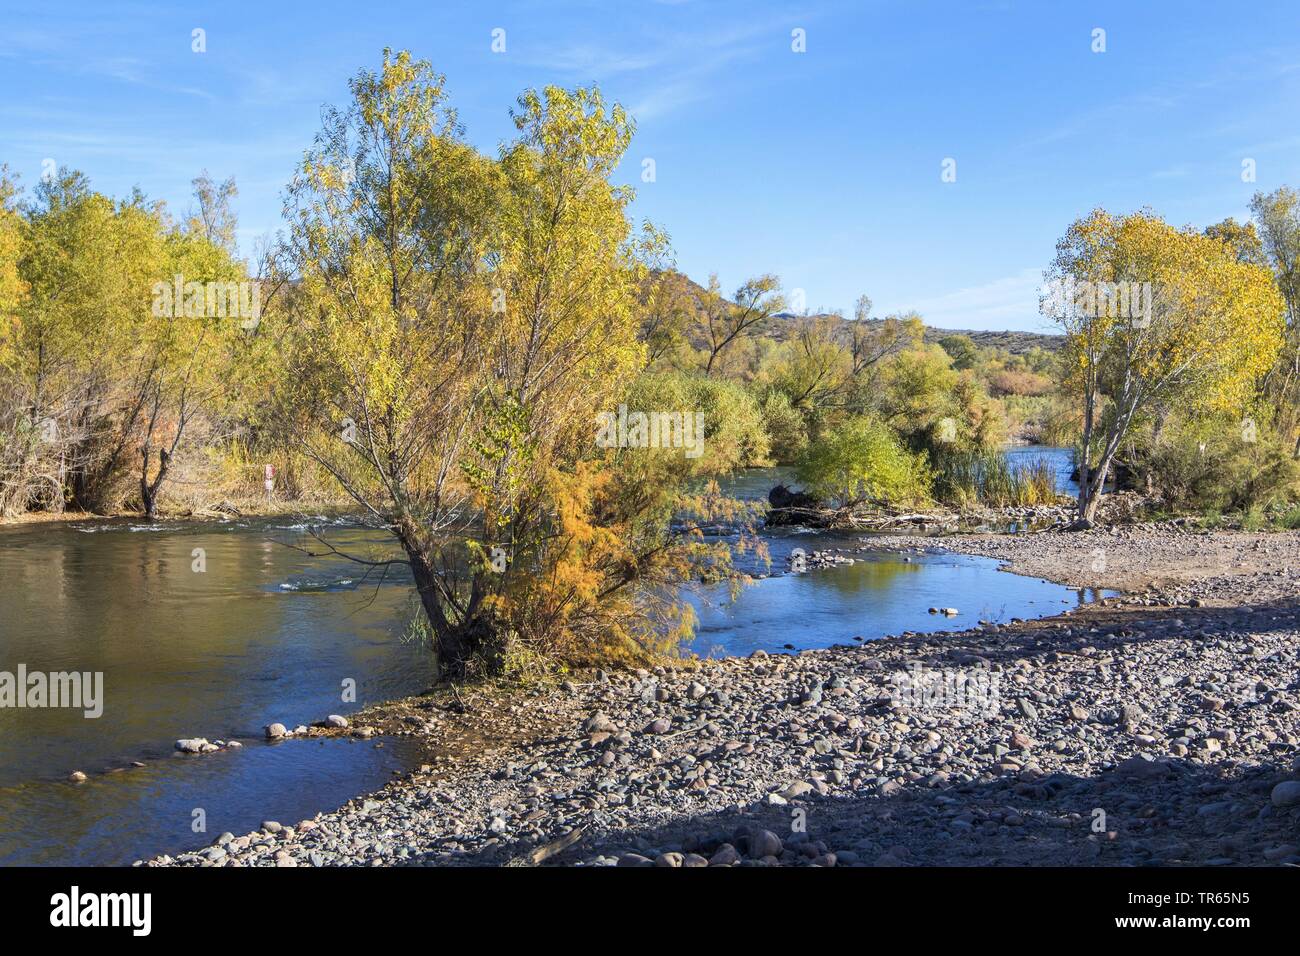 Salici e pioppi neri americani alberi sulla riva del fiume in autunno, STATI UNITI D'AMERICA, Arizona, Verde sul fiume Rio Verde Foto Stock